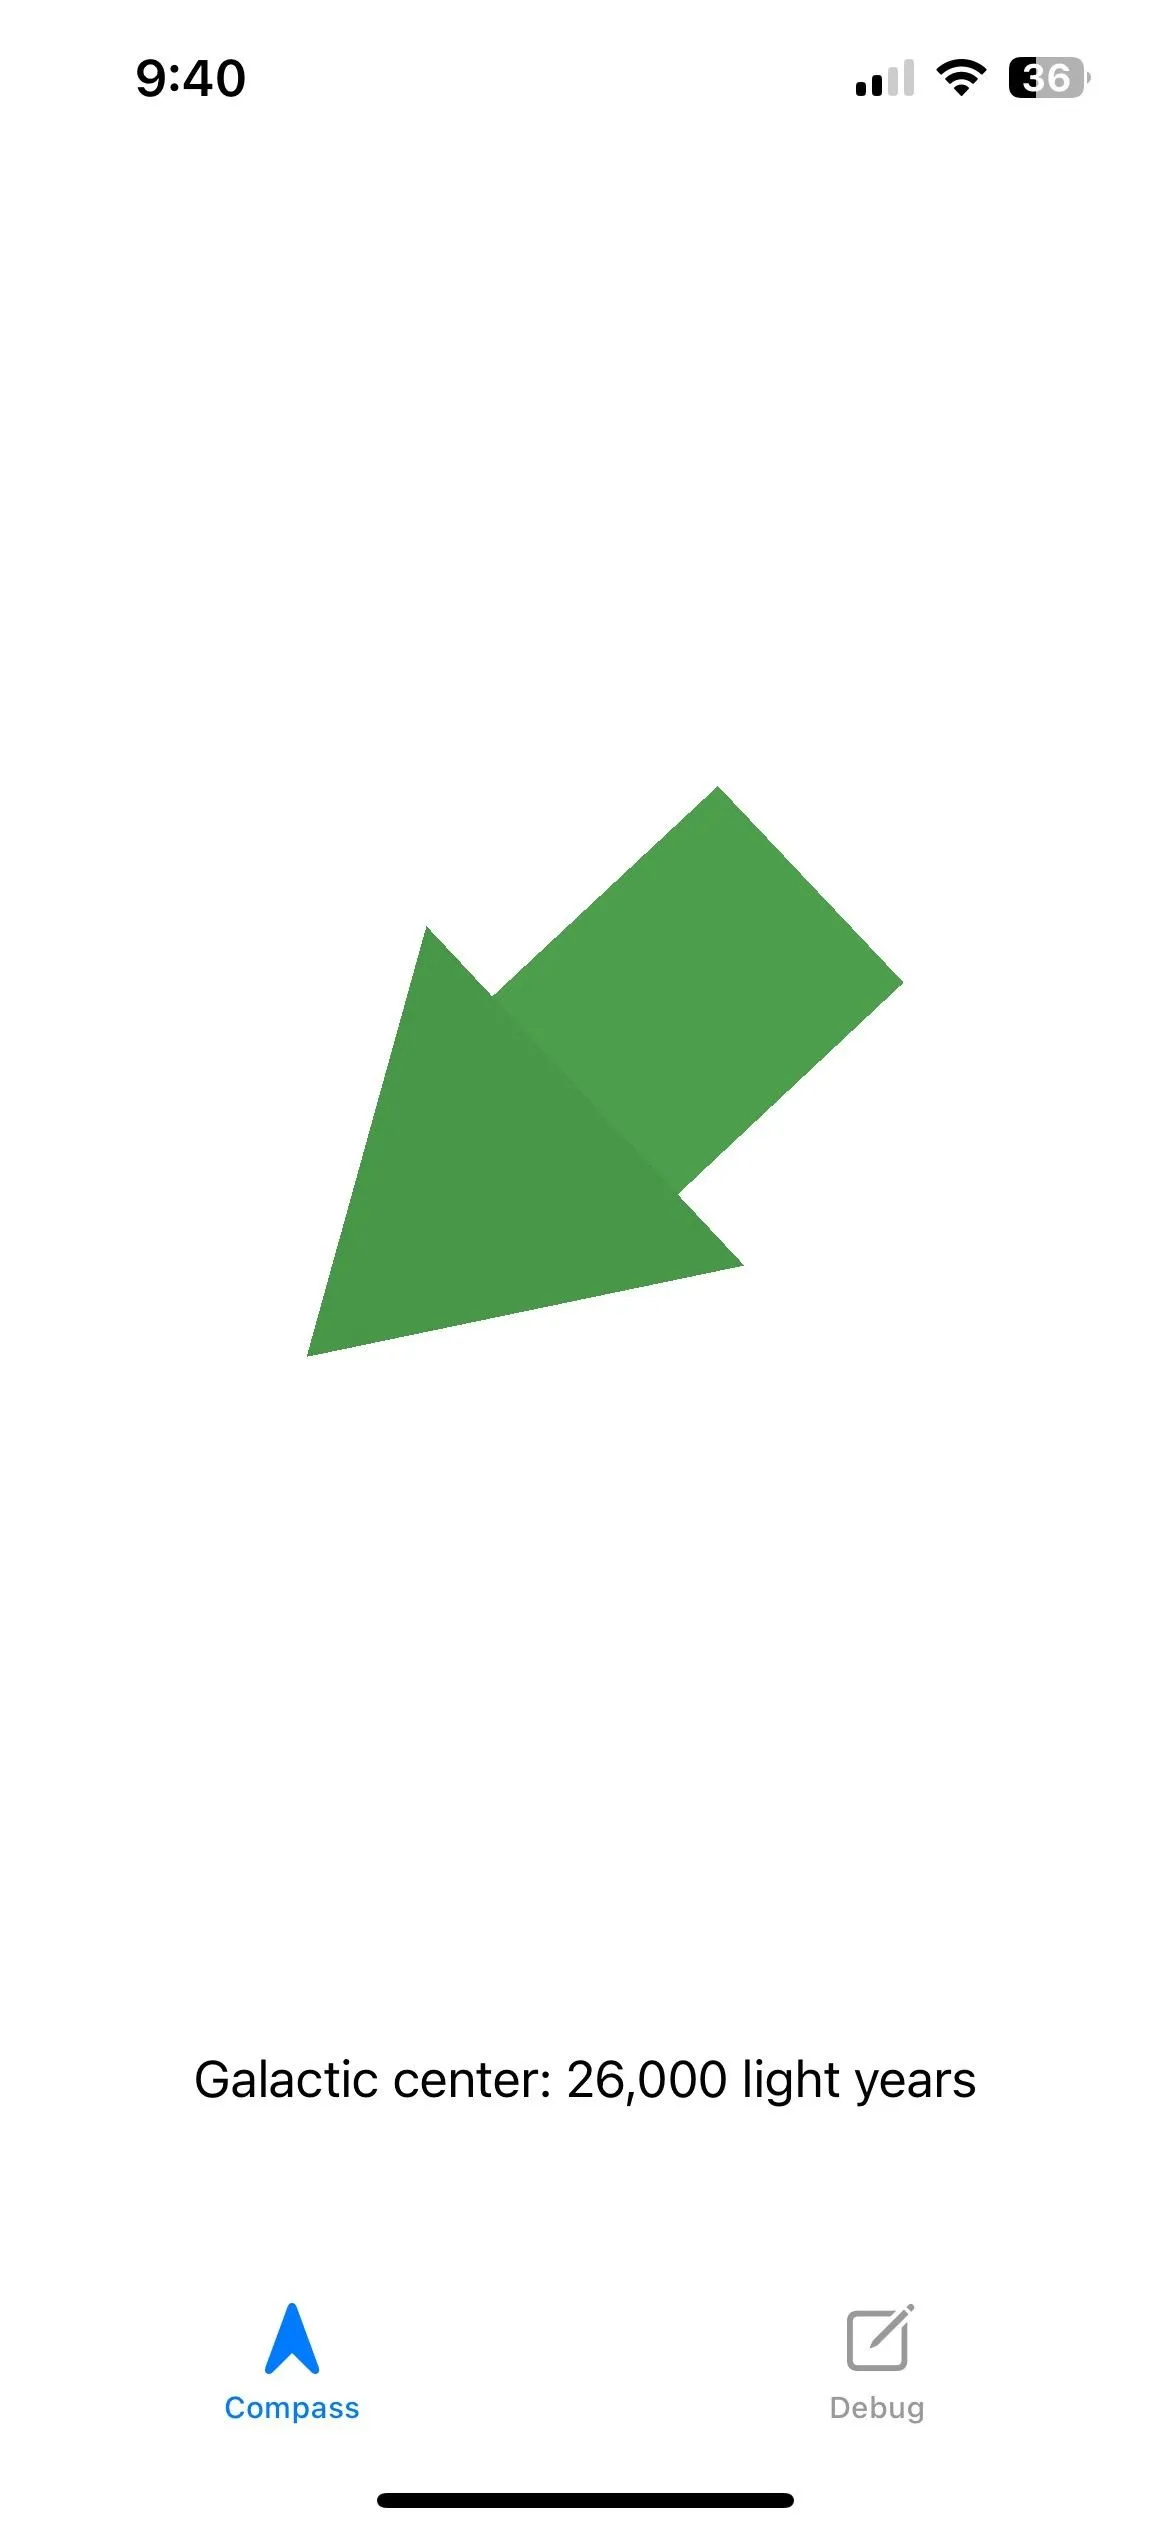 ein dreidimensionaler grüner Pfeil zeigt nach unten links.